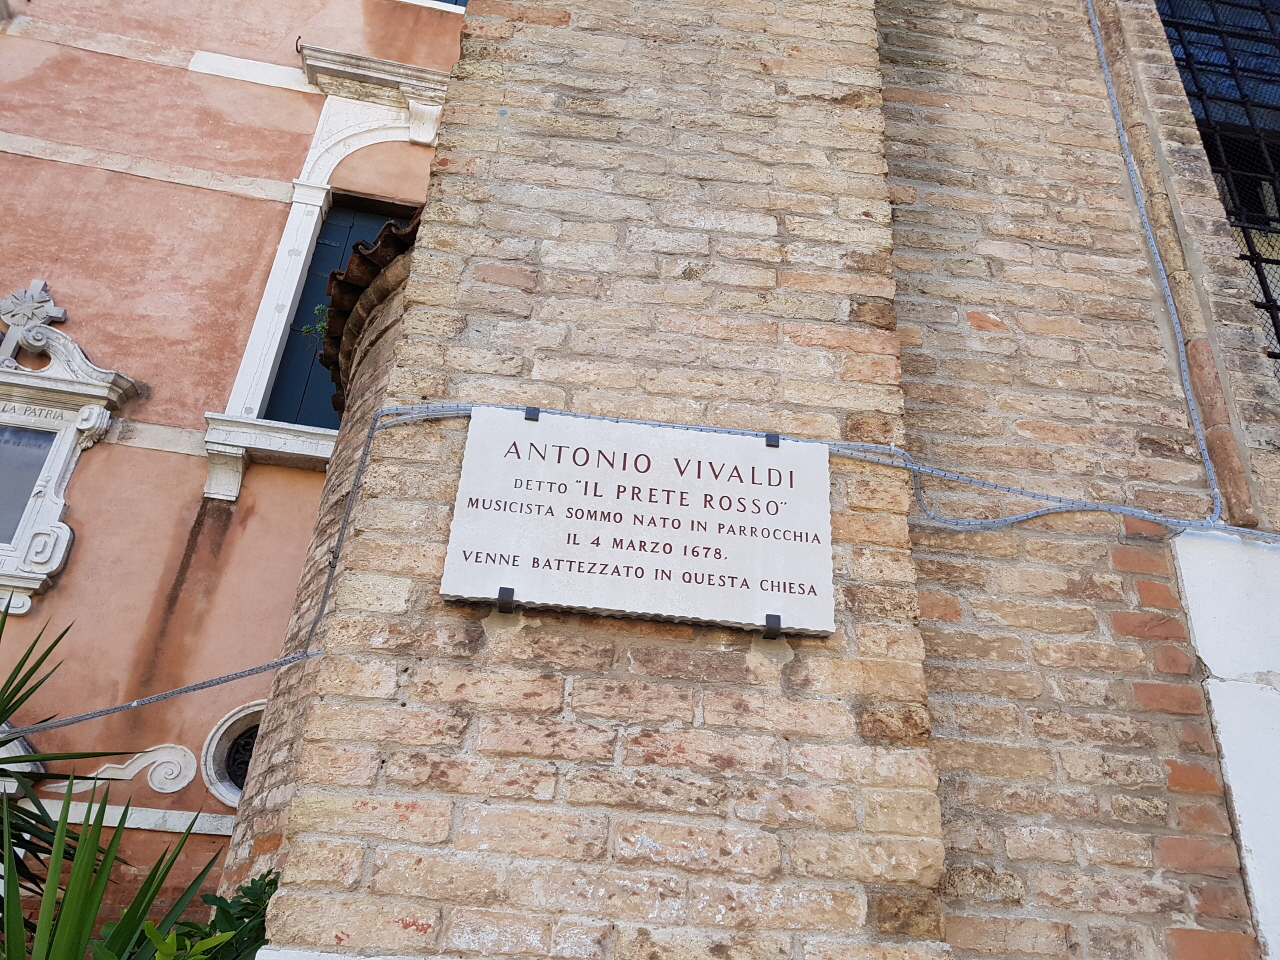 문화탐험은 비발디가 유아세례를 받았던 조그만 성당을 찾아가는 것으로 시작했다.  베네치아의 성 마르코 대성당의 바이올리니스트를 아버지로 두었던 비발디는 부친으로부터 바이올린의 초보 교육을 받았고, 레그렌찌에게서 작곡을 배웠다.